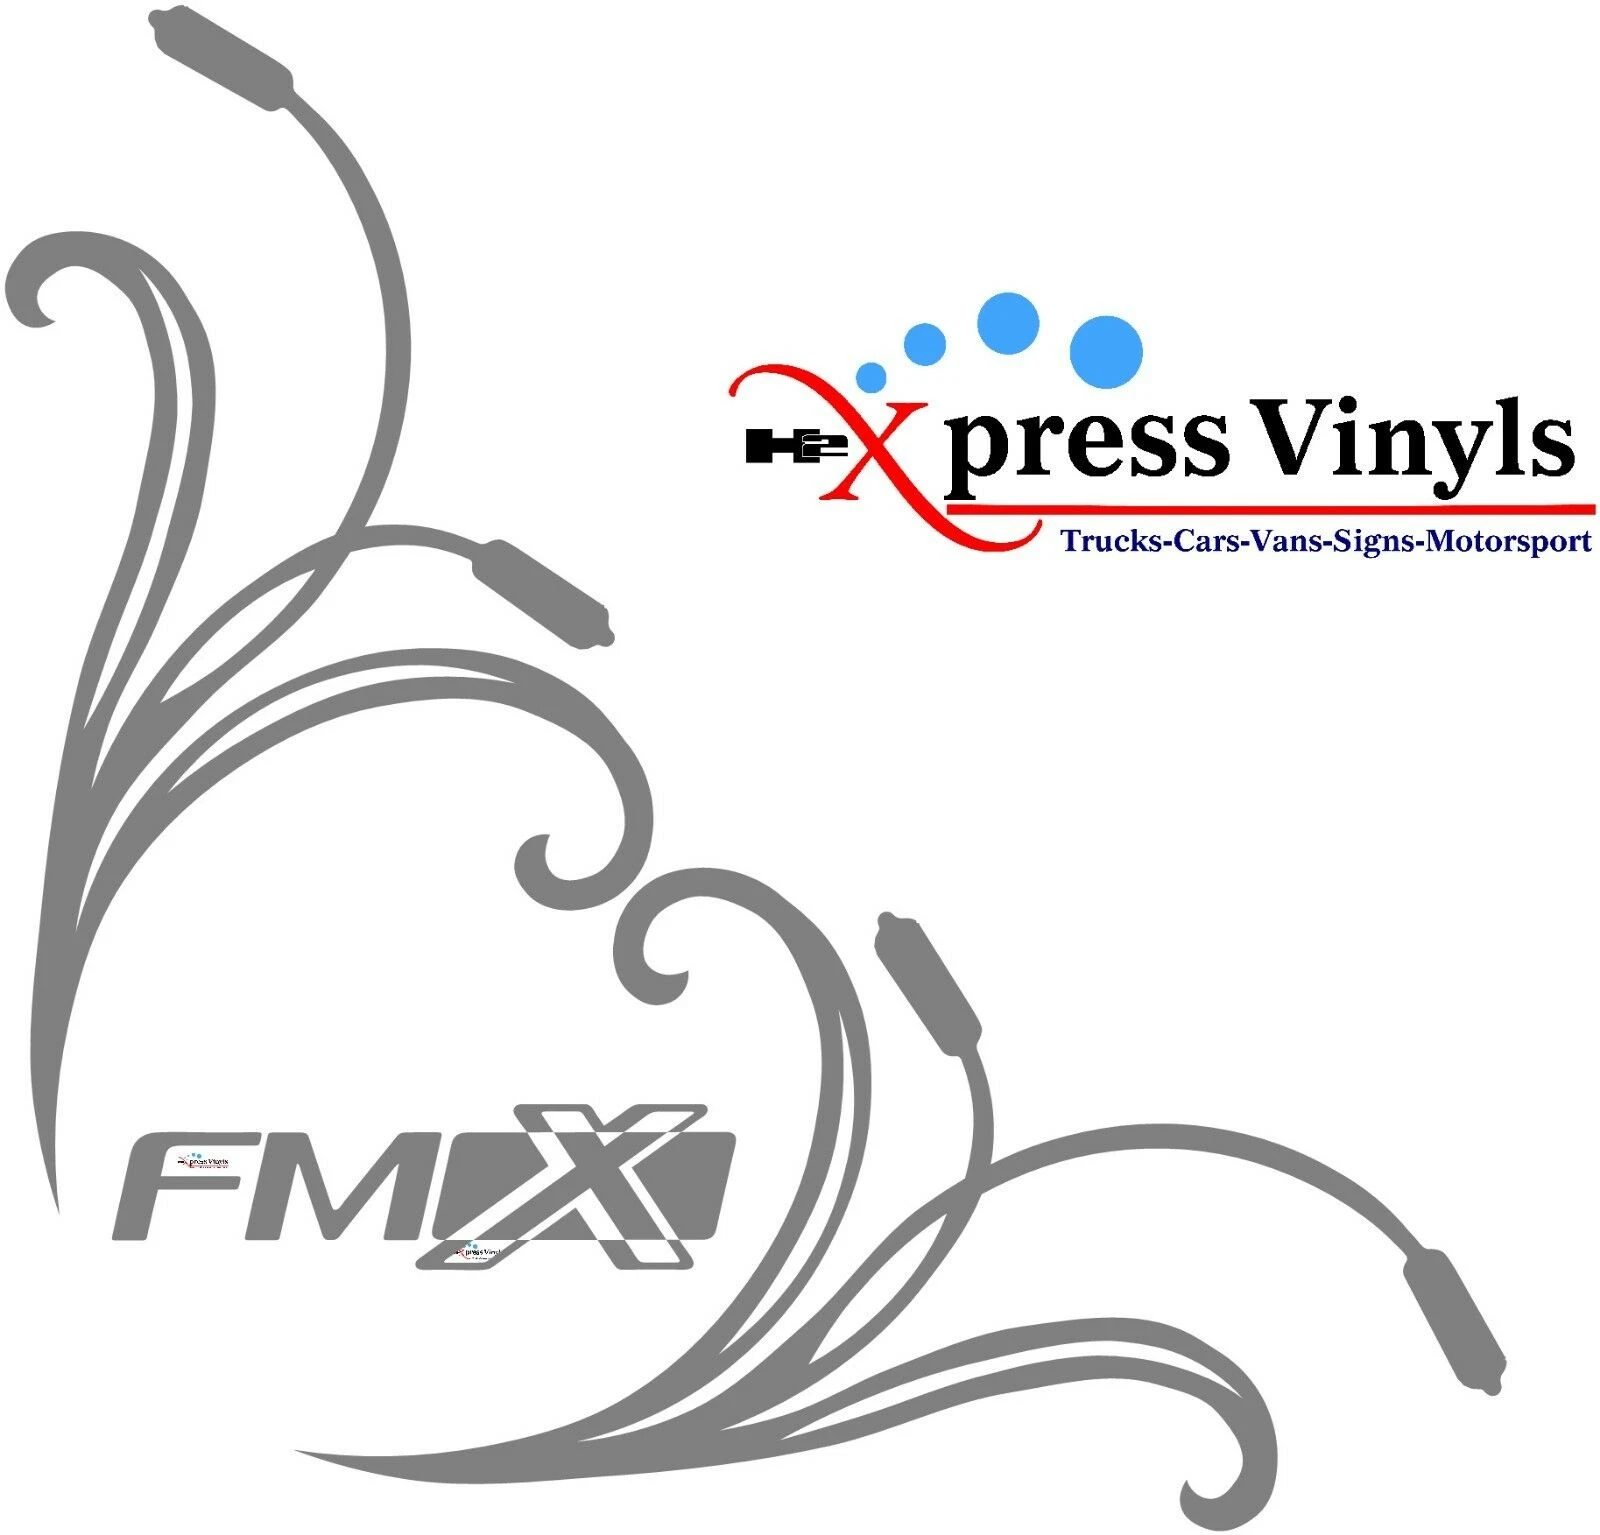 regelmatig Er is behoefte aan Volg ons Voor Volvo Fmx Raamstickers X 2 Vrachtwagen Graphics Vinyl Stickers| | -  AliExpress